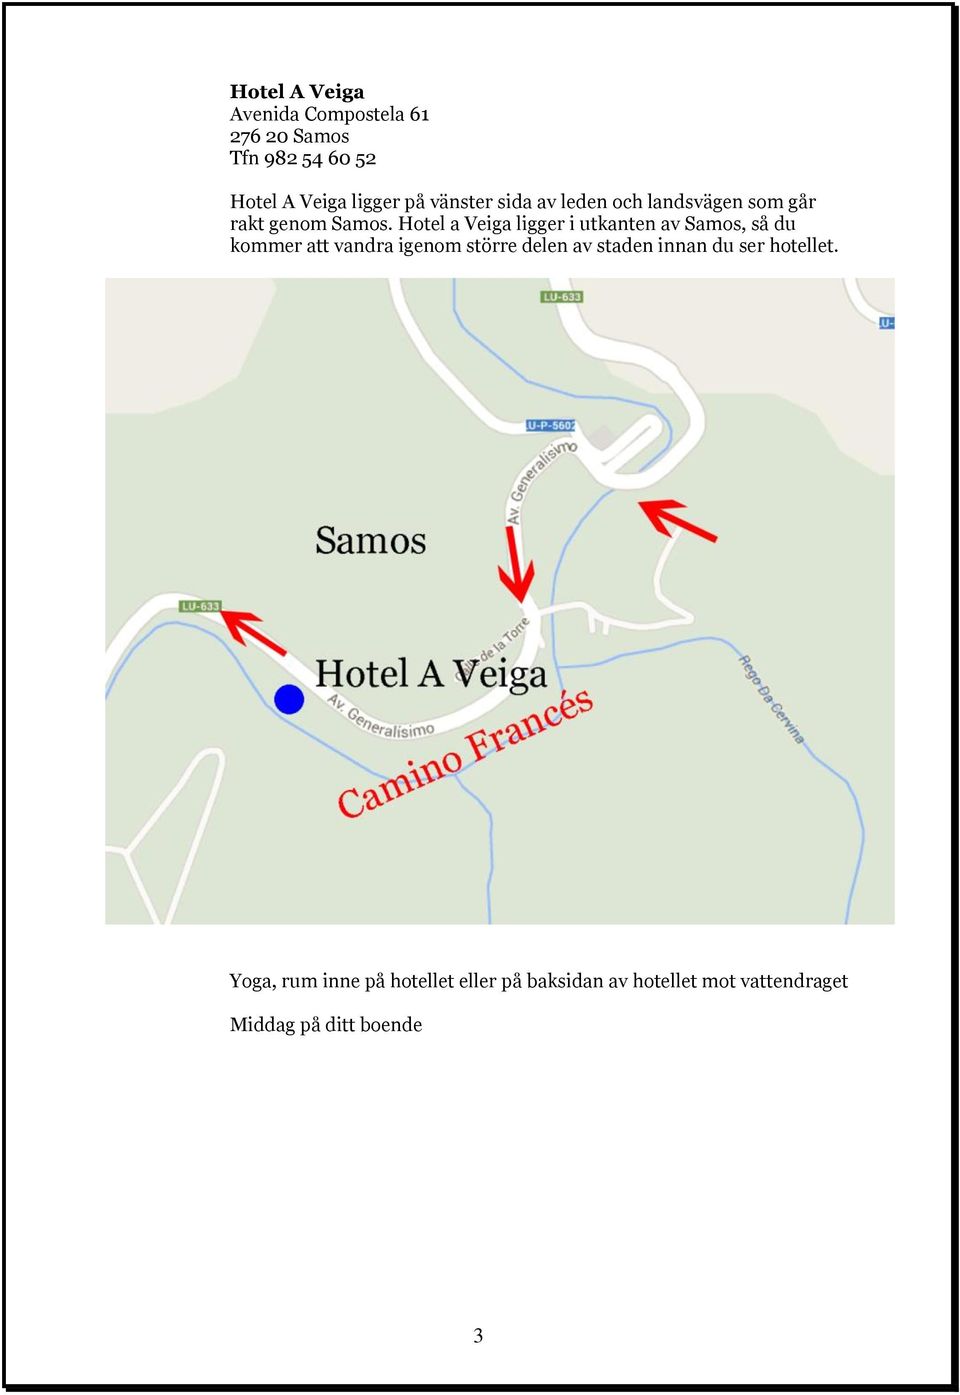 Hotel a Veiga ligger i utkanten av Samos, så du kommer att vandra igenom större